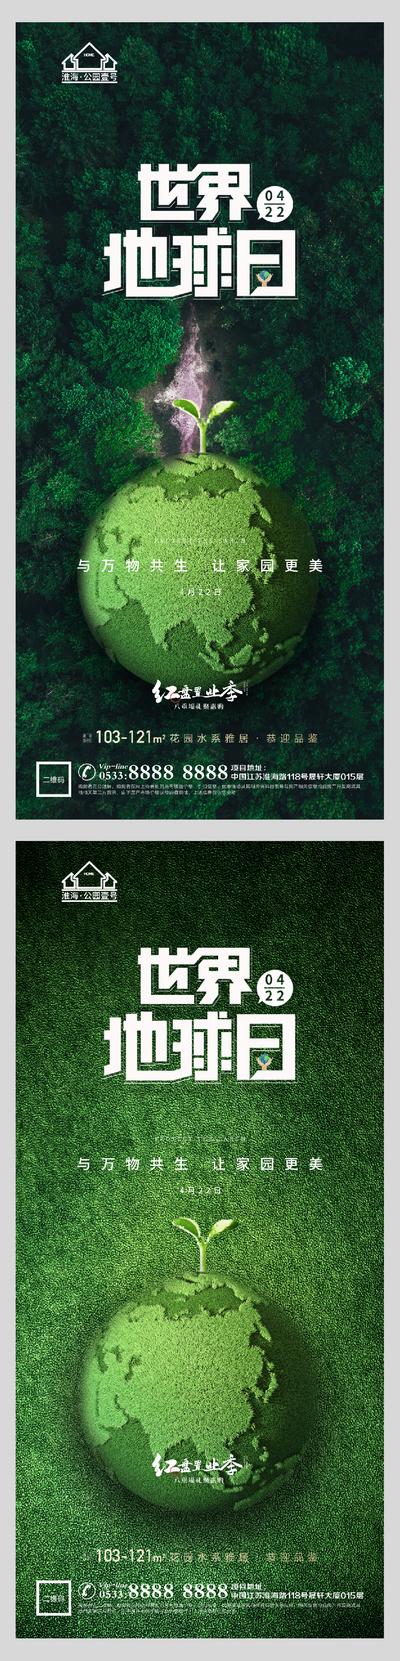 【南门网】海报 公历节日 世界地球日 保护 环保 绿色